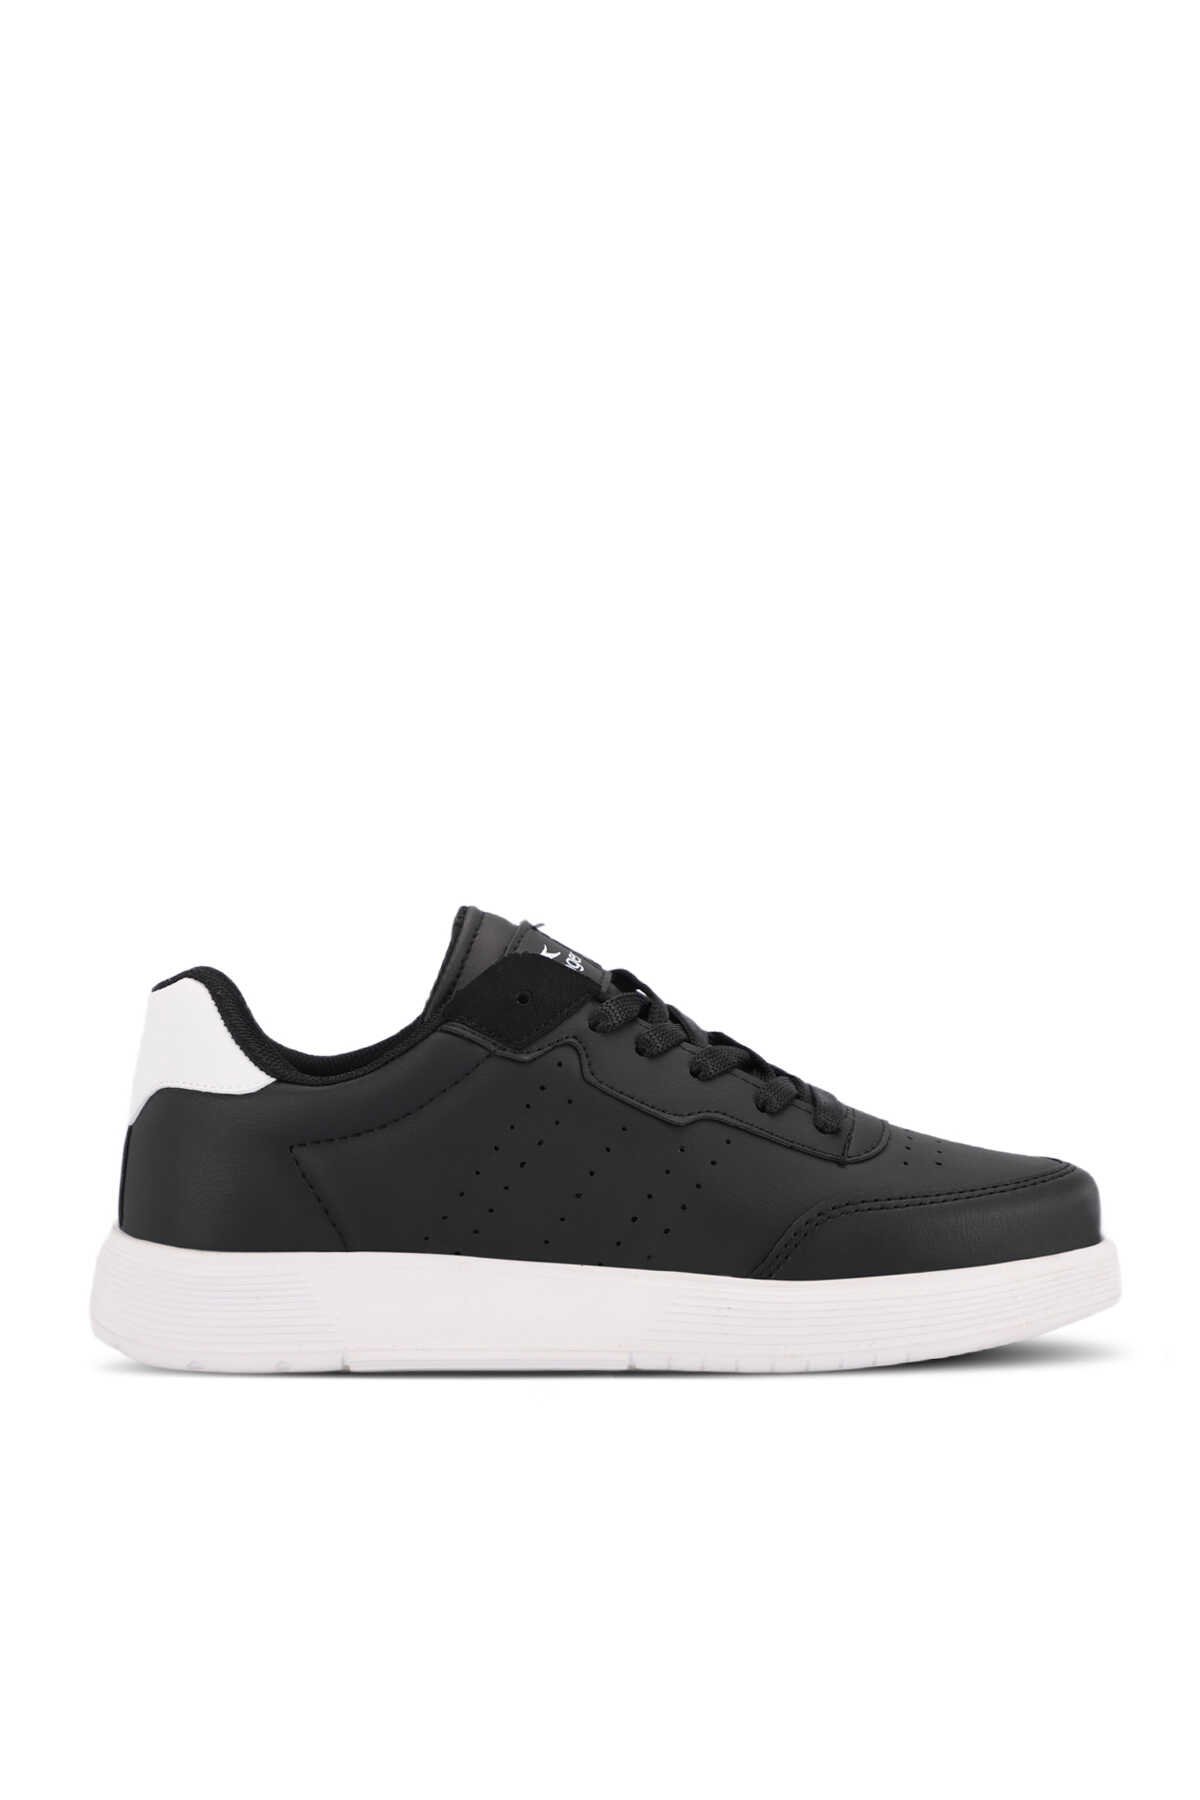 Slazenger - ZEKKO Sneaker Kadın Ayakkabı Siyah / Beyaz